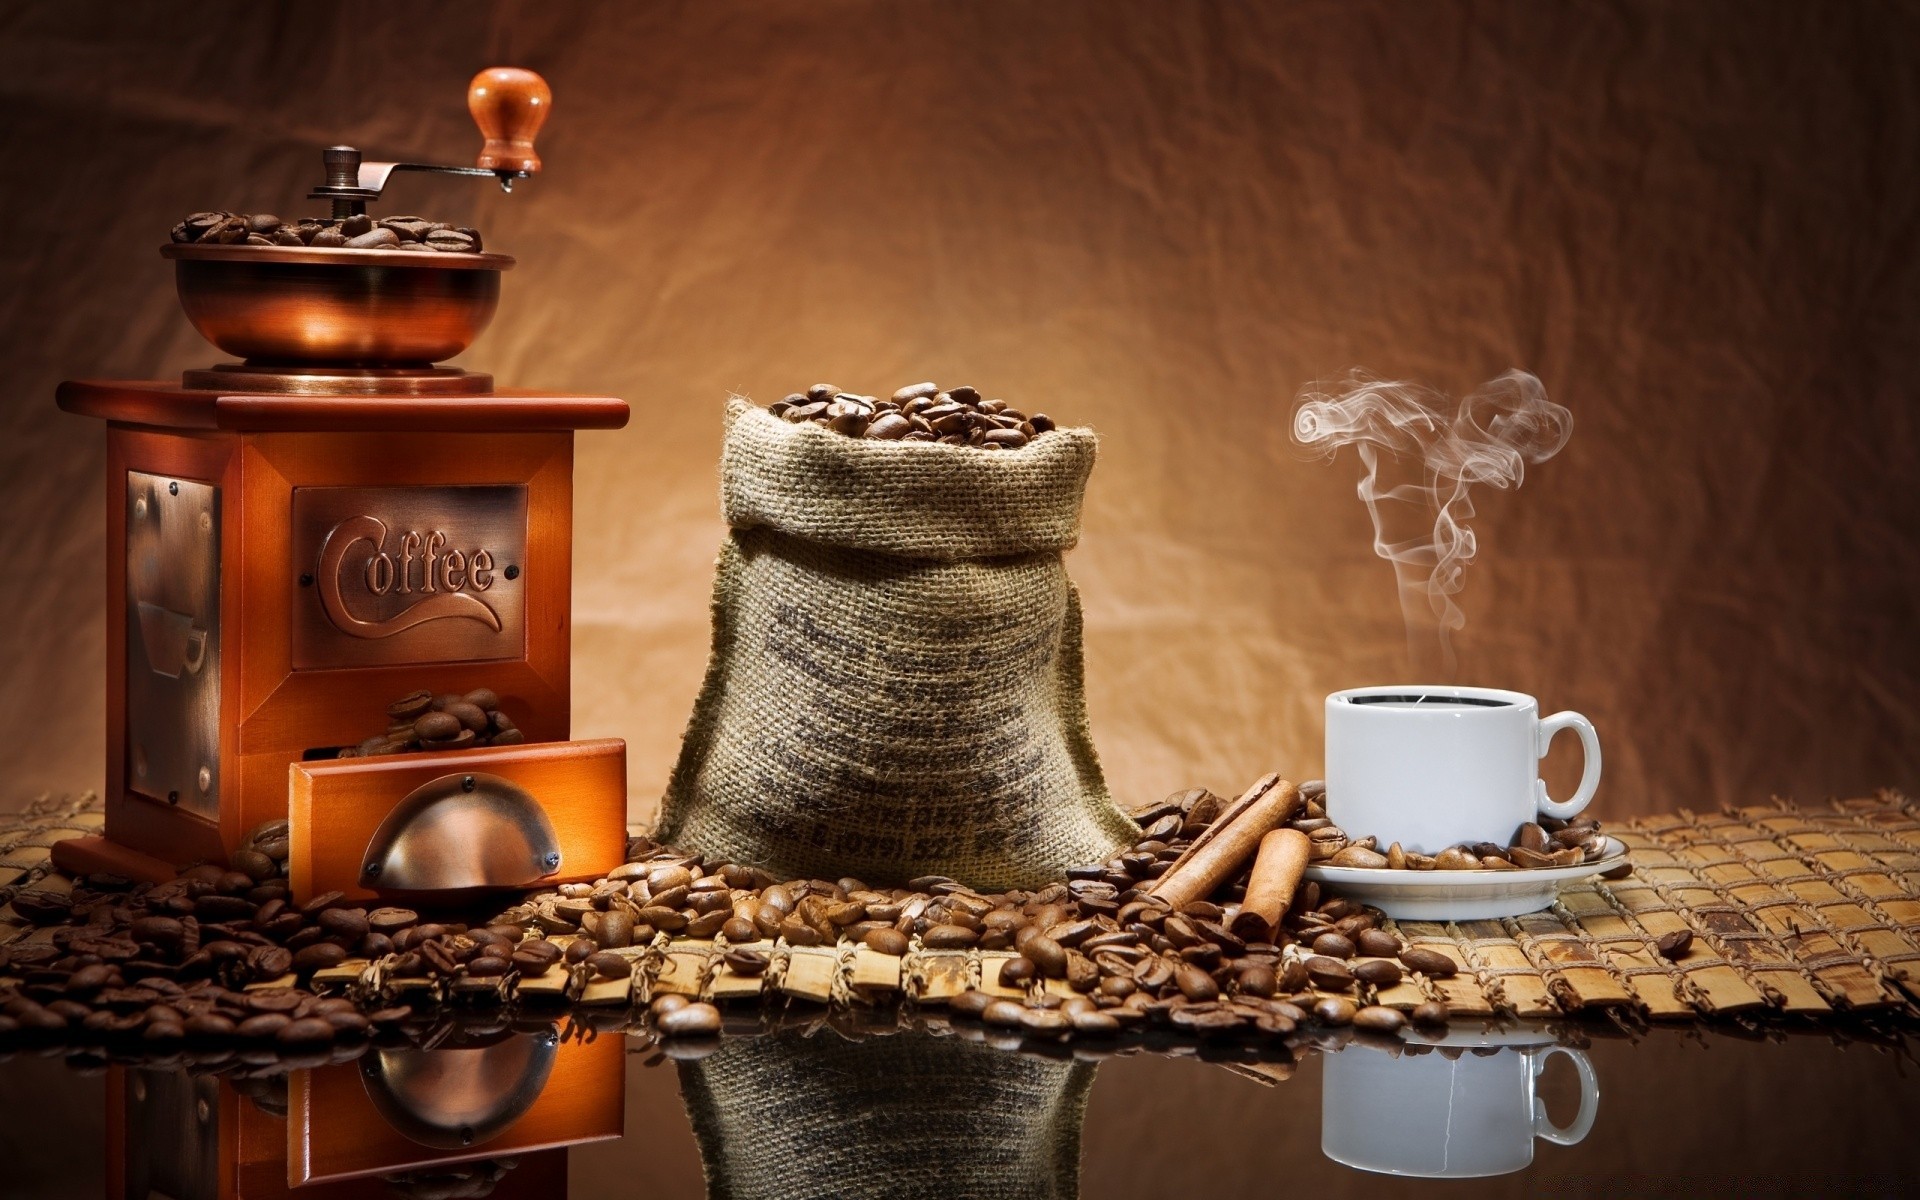 винтаж кофе таблица чай пить кубок темный эспрессо в помещении натюрморт еда древесины завтрак шоколад кофеин